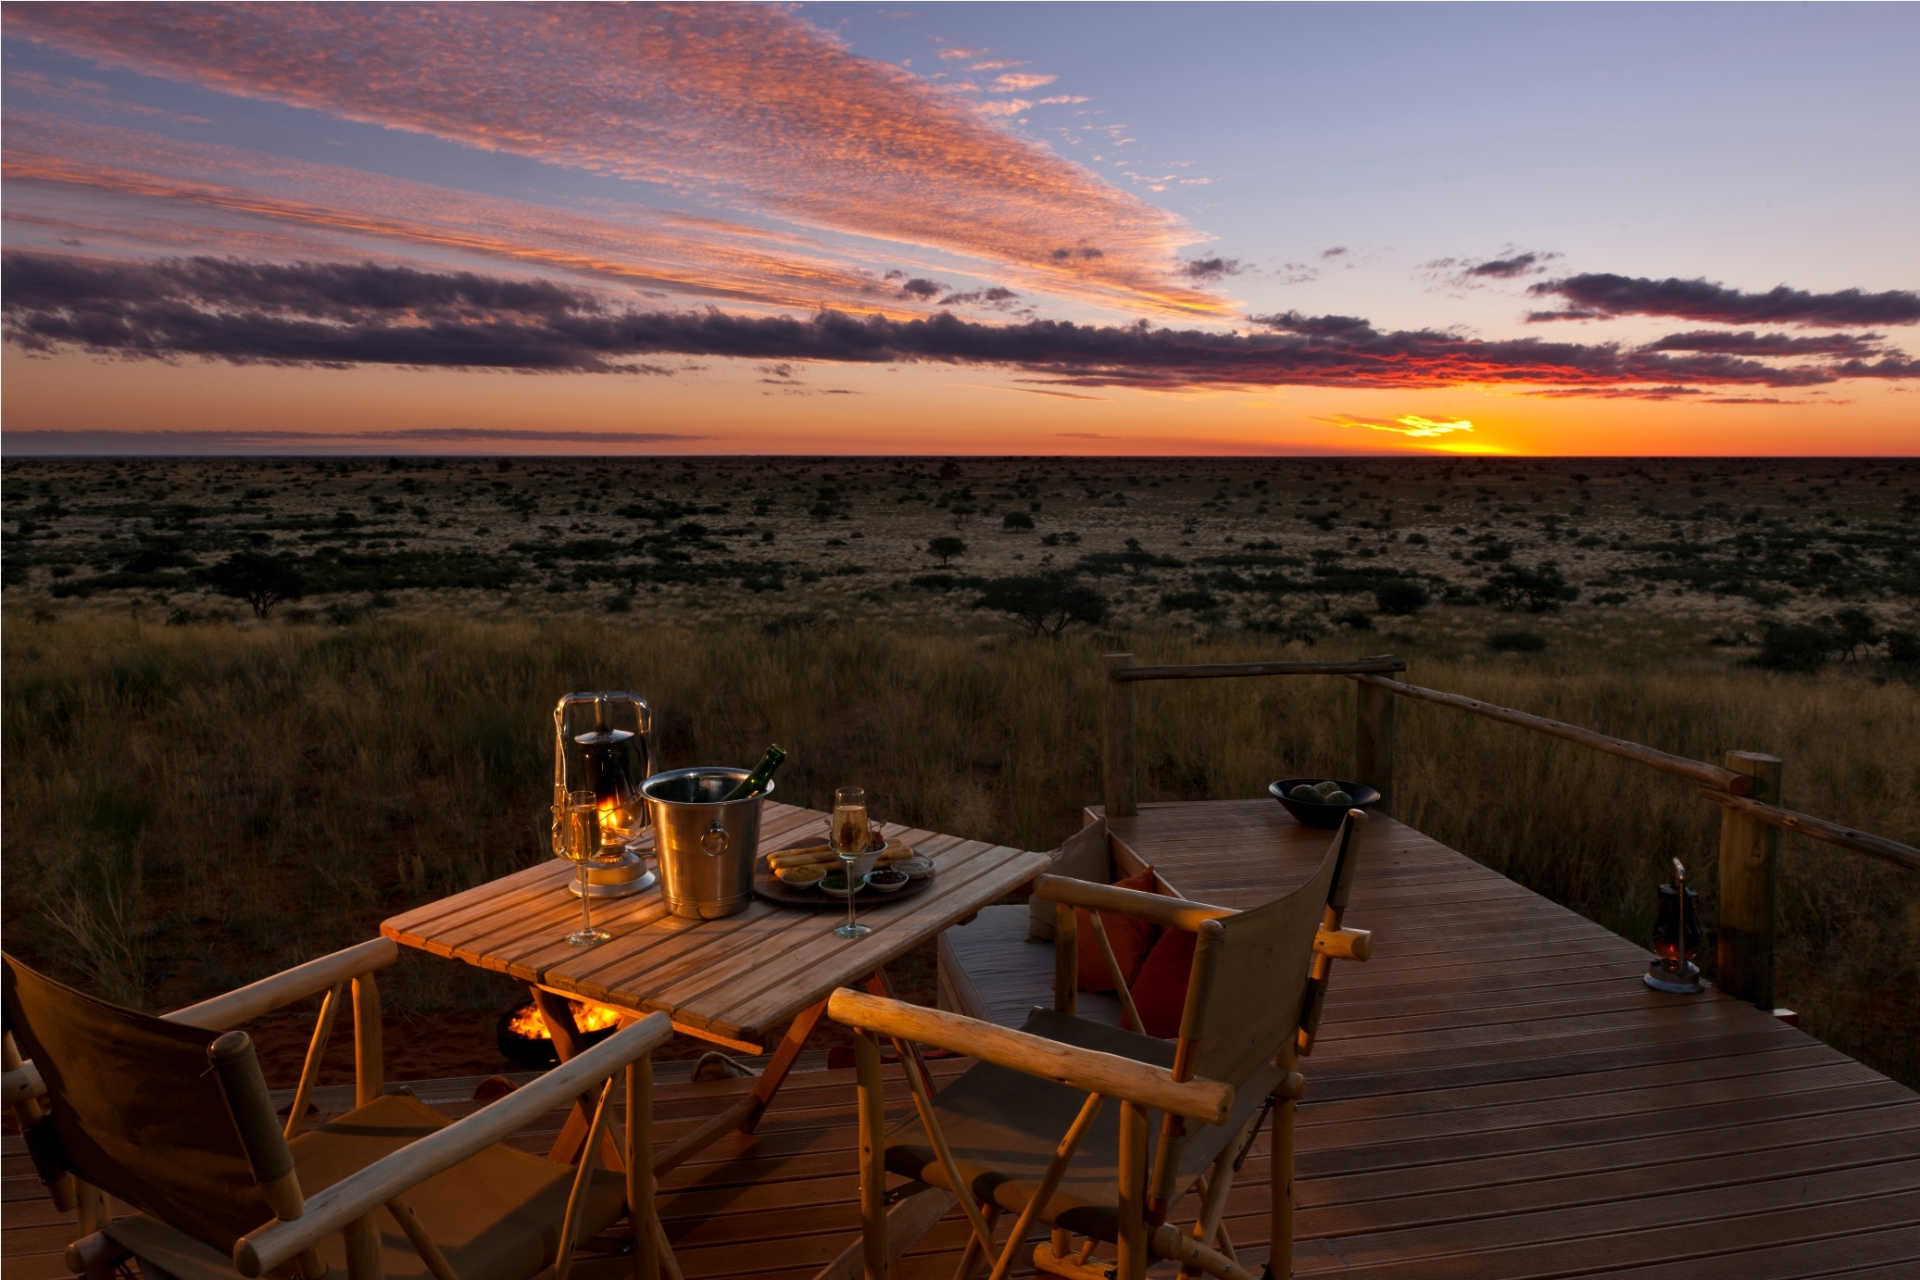 Sunset over Kalahari 